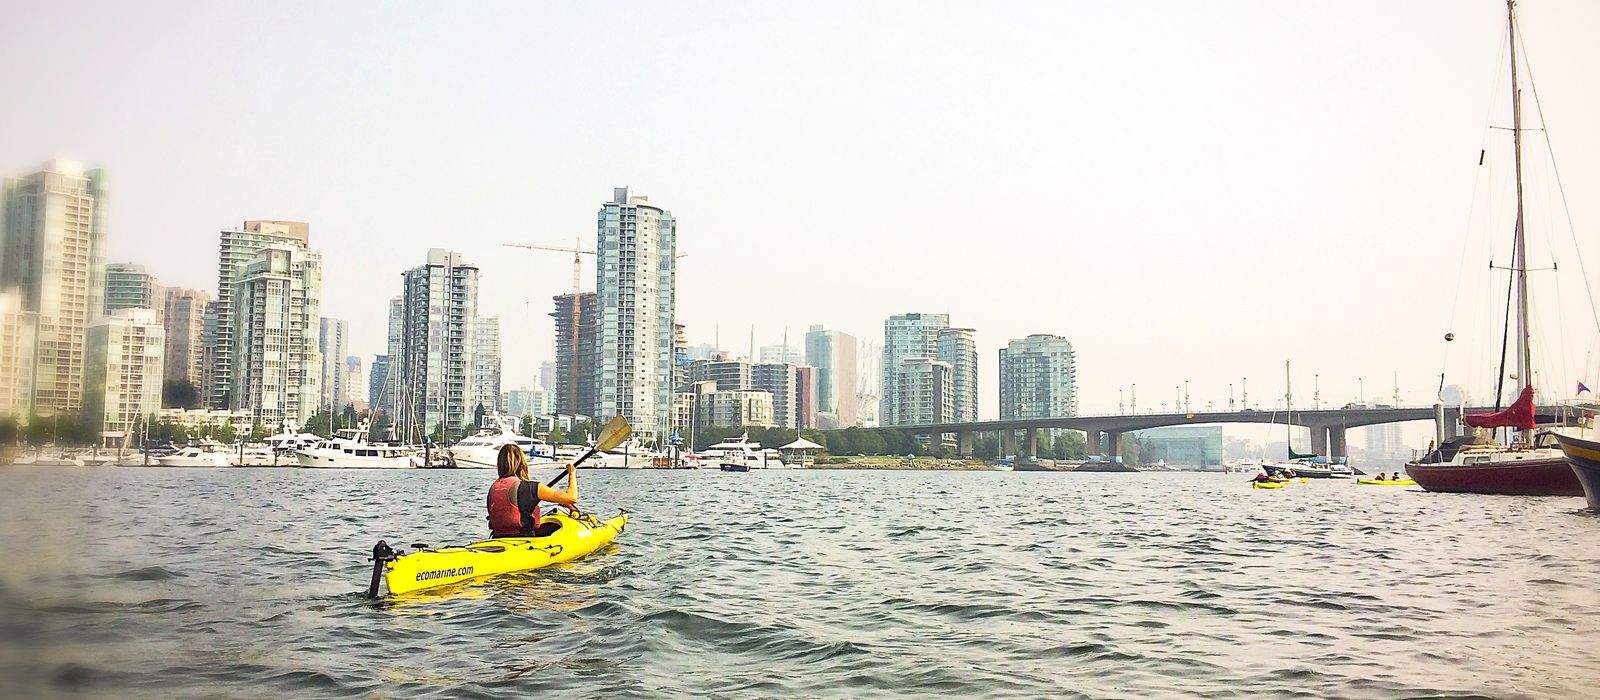 Mit dem Kayak in Vancouver nahe der Granville Island entlang schippern